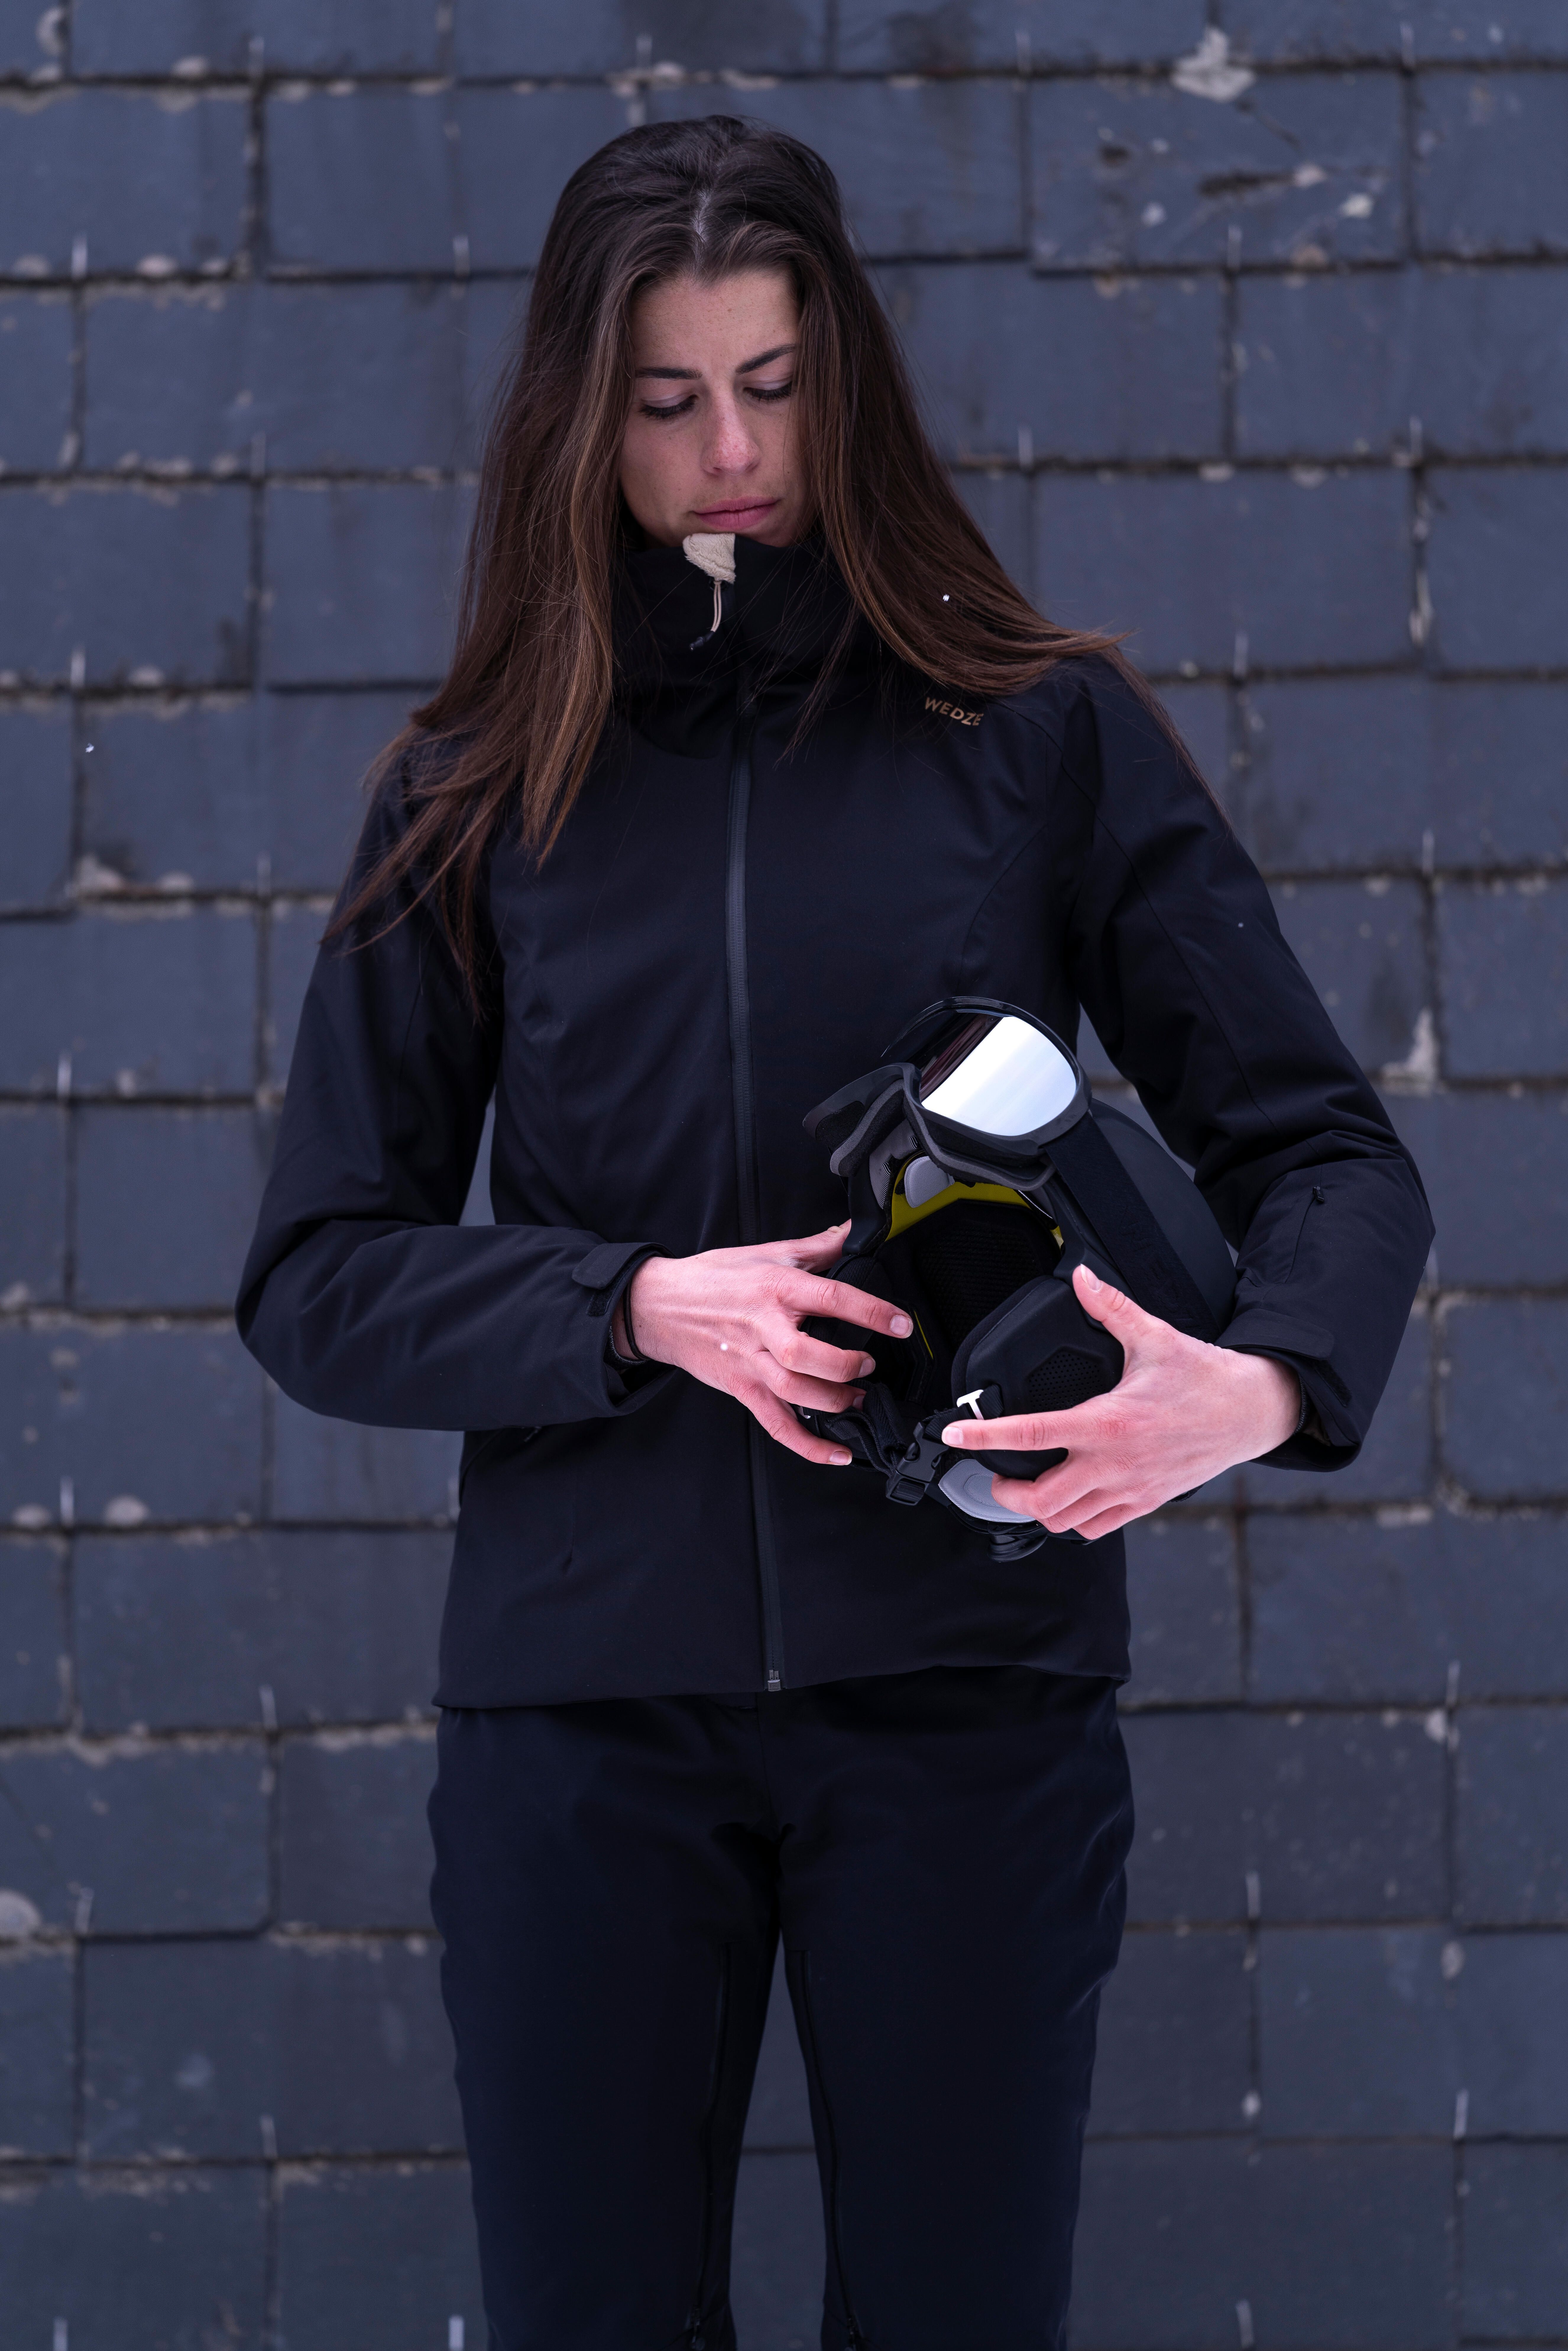 Manteau de ski en duvet femme – 500 chaud noir - WEDZE